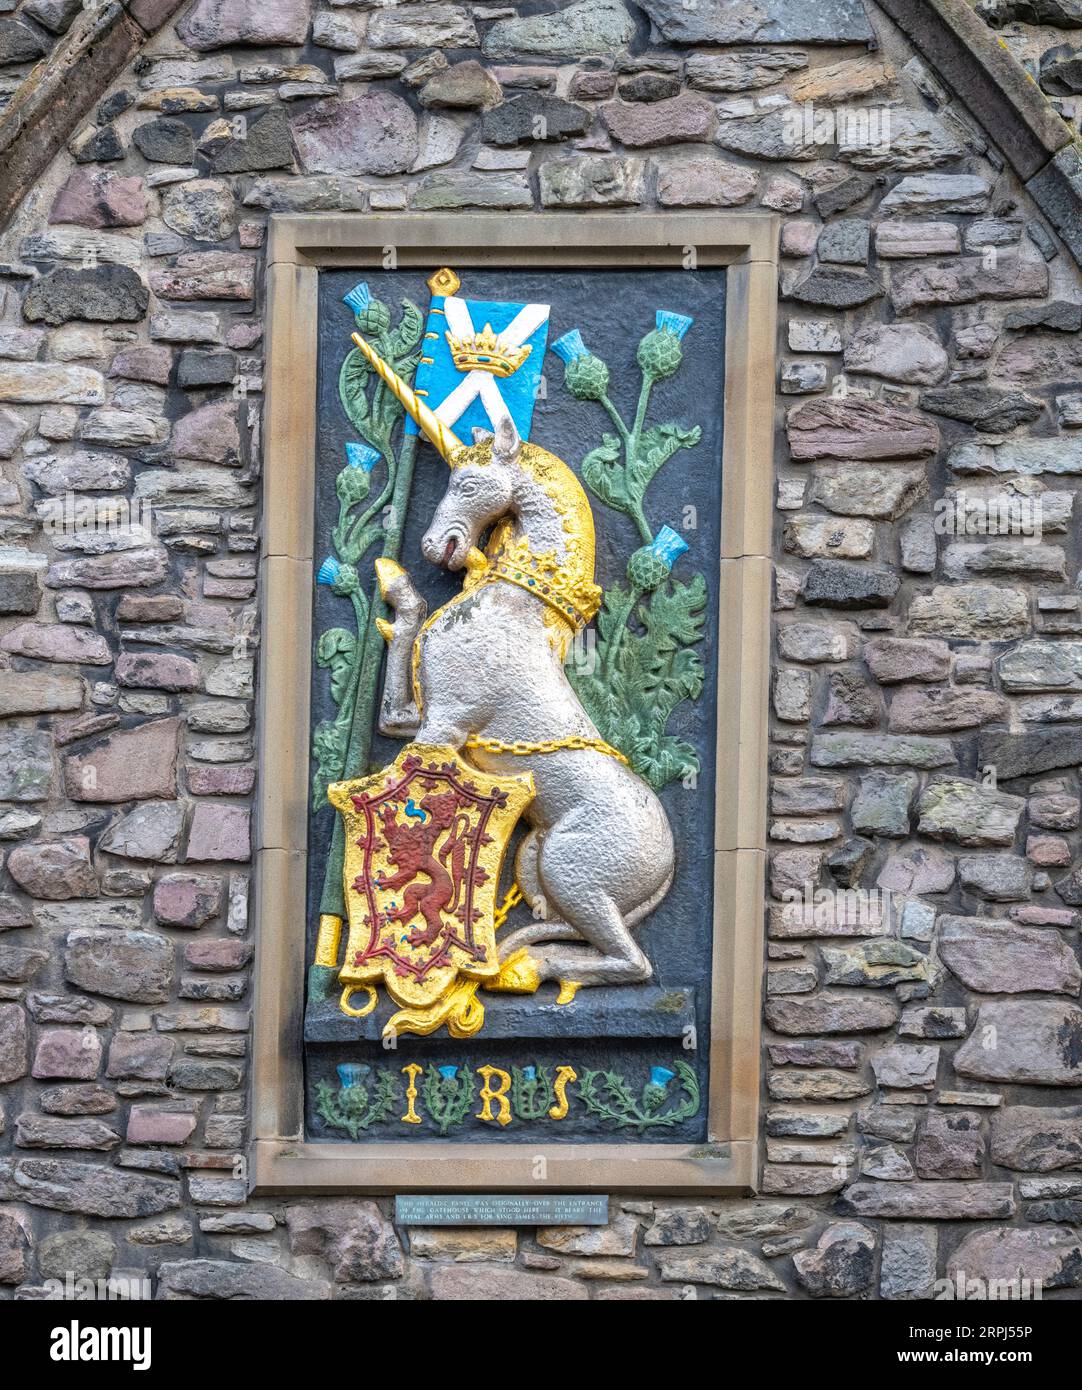 Armoiries royales de la licorne écossaise et du lion d'Angleterre sur le palais de justice de l'abbaye près du palais de Holyrood Banque D'Images